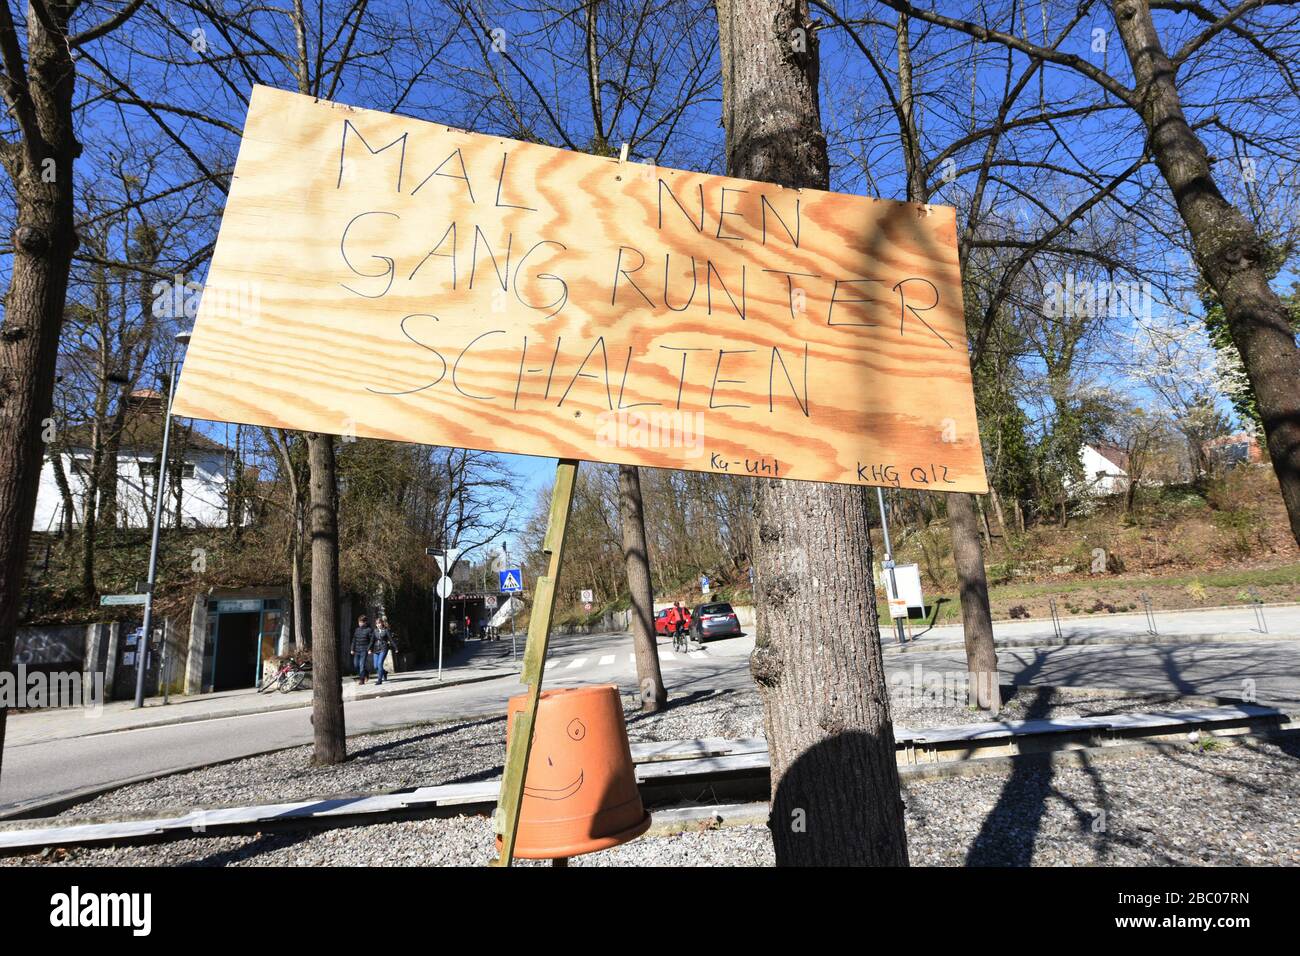 Signe avec l'inscription 'mal ein Gang runter schalten', prise le jour de l'élection locale 2020 dans le Würmtal, qui a été marqué par la crise de Corona. [traduction automatique] Banque D'Images